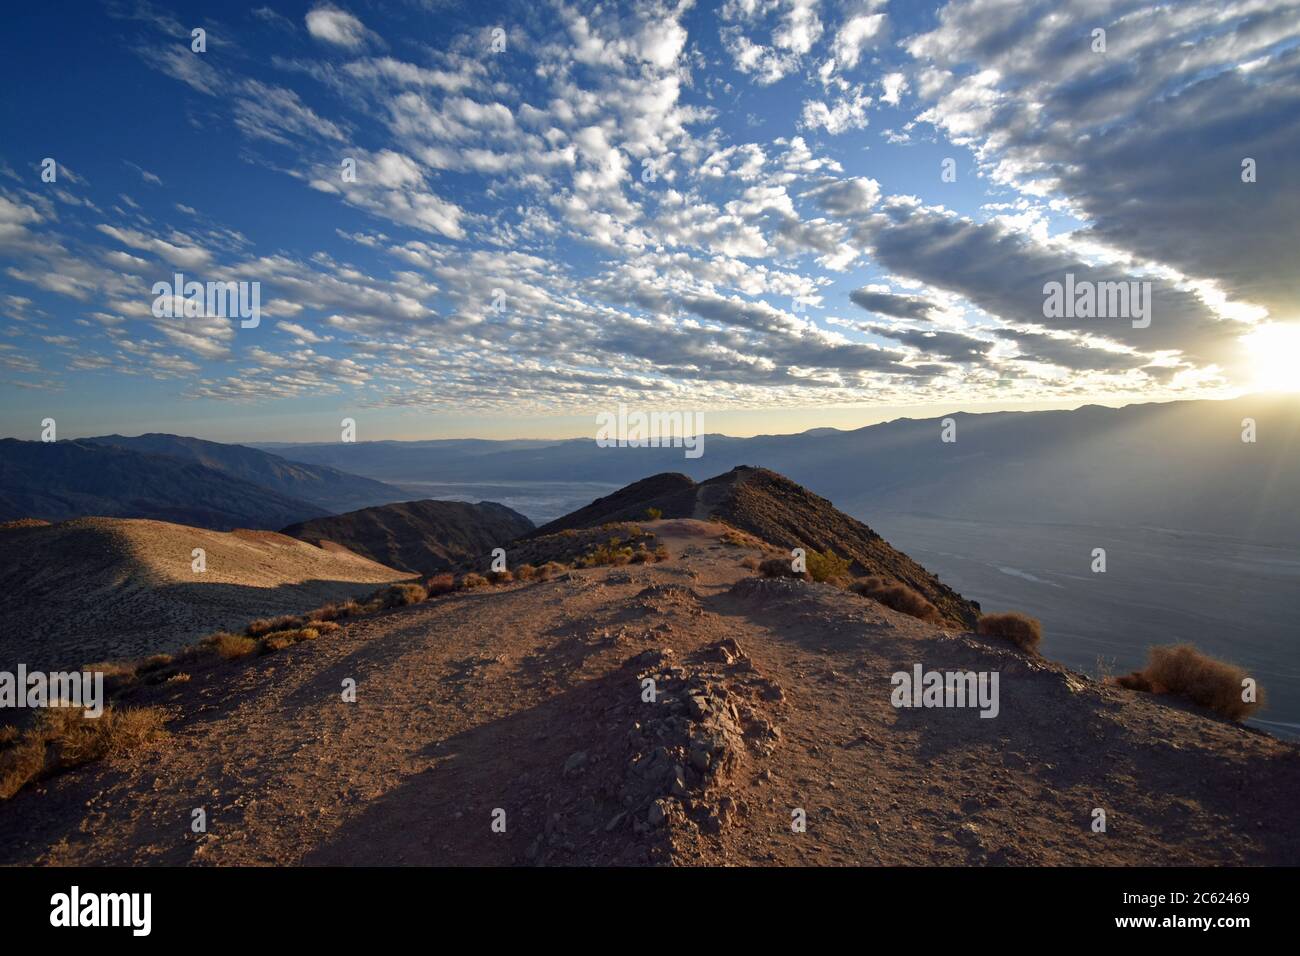 Tramonto a Dantes Vista sopra la Valle della morte. Un sentiero conduce verso il bordo della catena montuosa. Il sole che tramonta si rompe attraverso le nuvole. Foto Stock